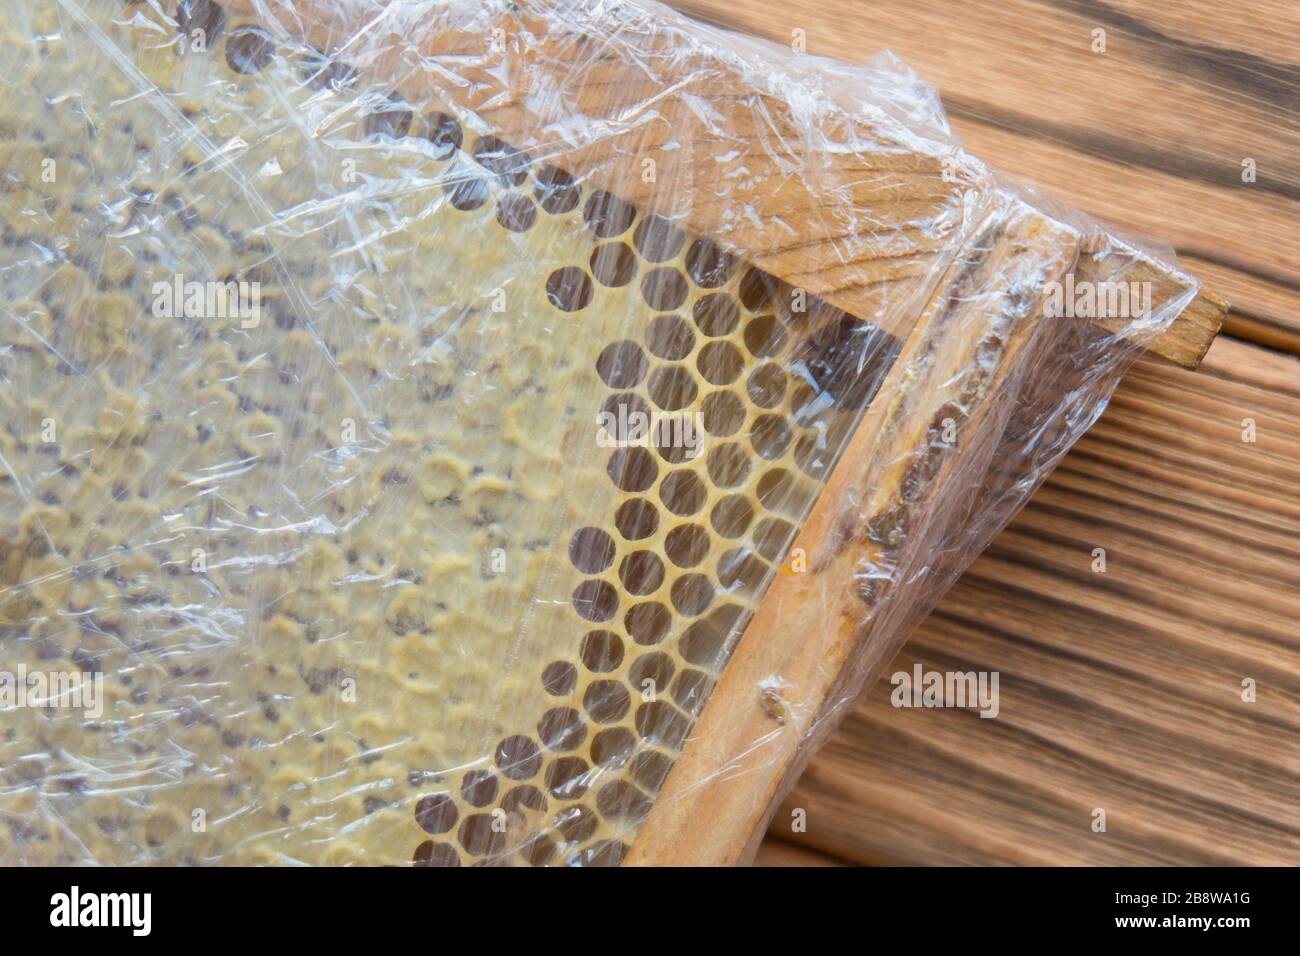 Waben in transparenter Verpackung. Bienenhaus in einem Holzrahmen. Stockfoto